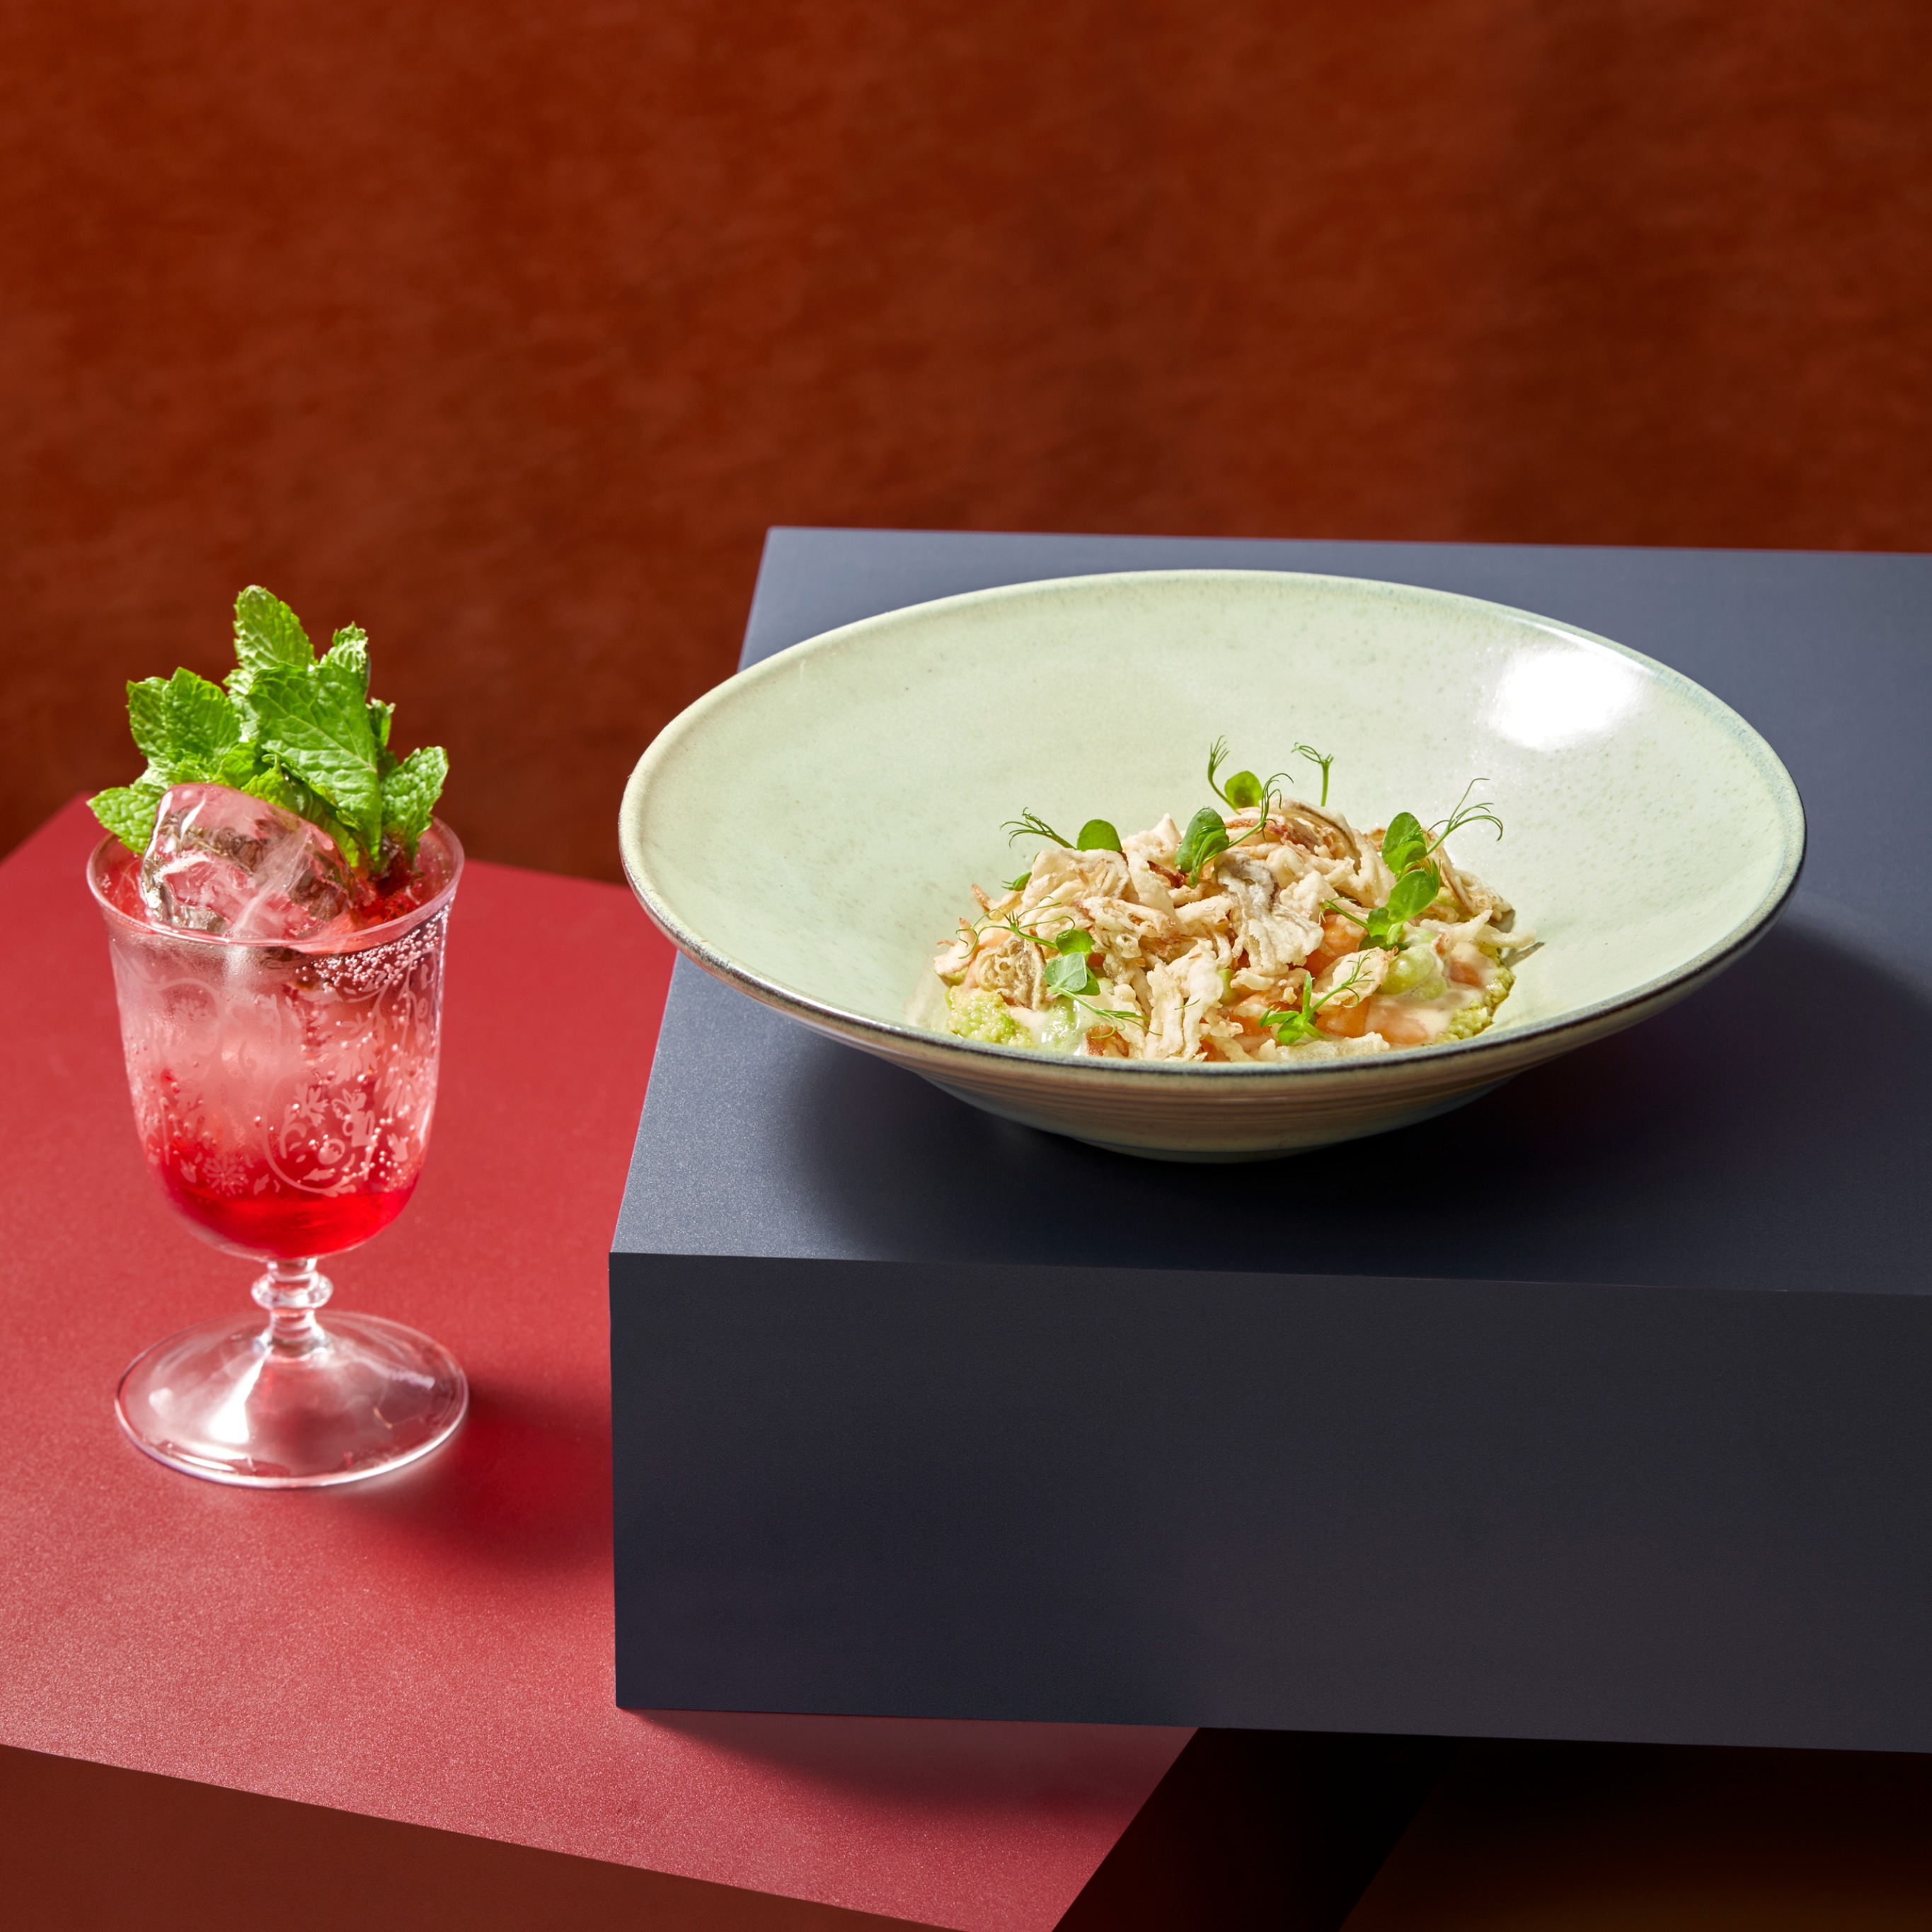 上海波特曼丽思卡尔顿酒店匠心美学呈献《寻味罗马》五道式意大利风味品鉴菜单